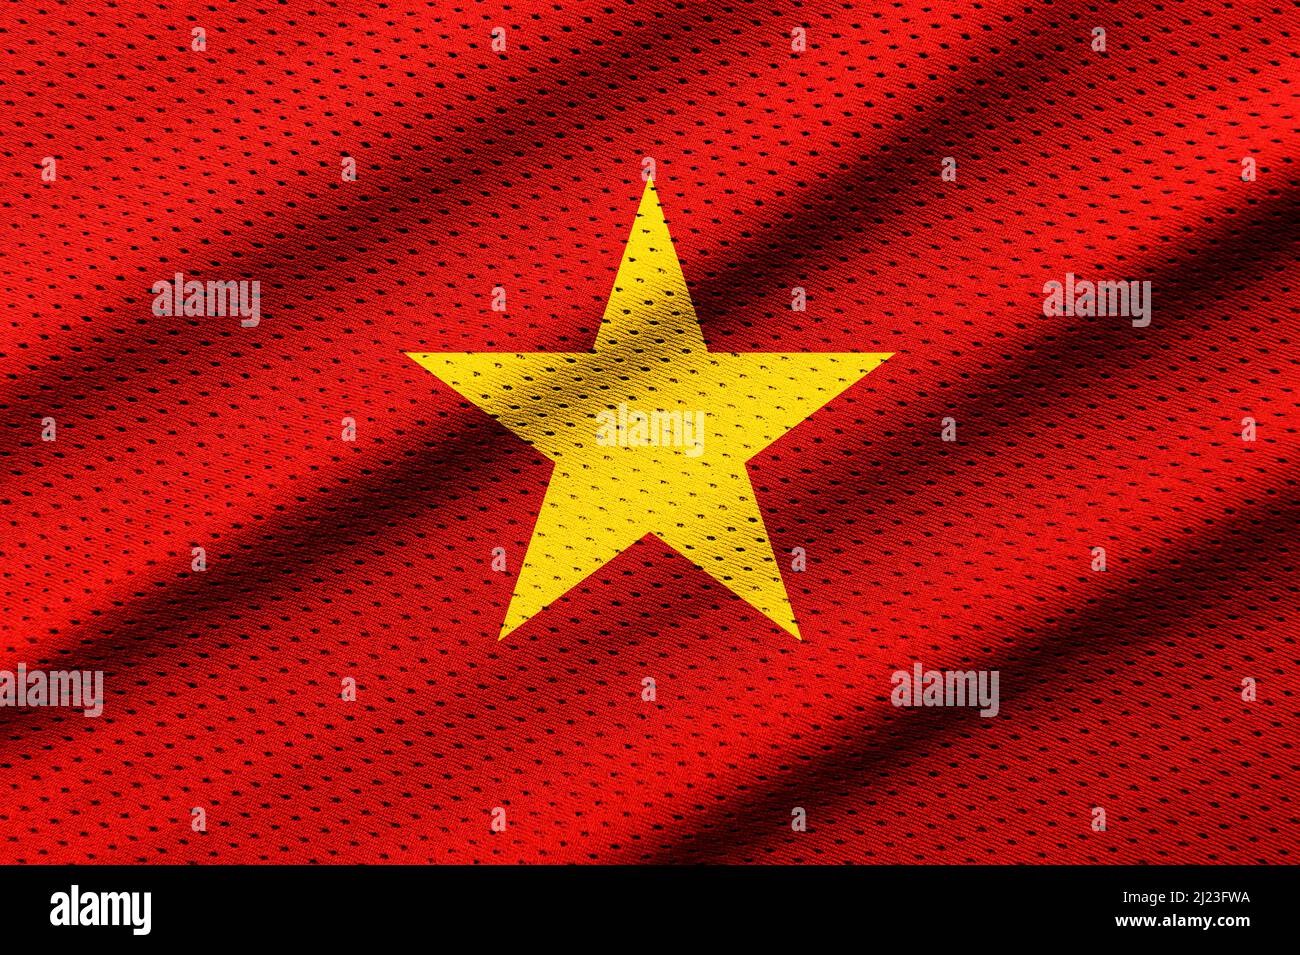 Cờ đỏ sao vàng rực rỡ trên nền xanh đặc trưng của Việt Nam là một biểu tượng quốc gia đầy ý nghĩa. Hãy chiêm ngưỡng hình ảnh của lá cờ đang thoáng bay trên bầu trời xanh thật là tuyệt vời và đầy cảm xúc.